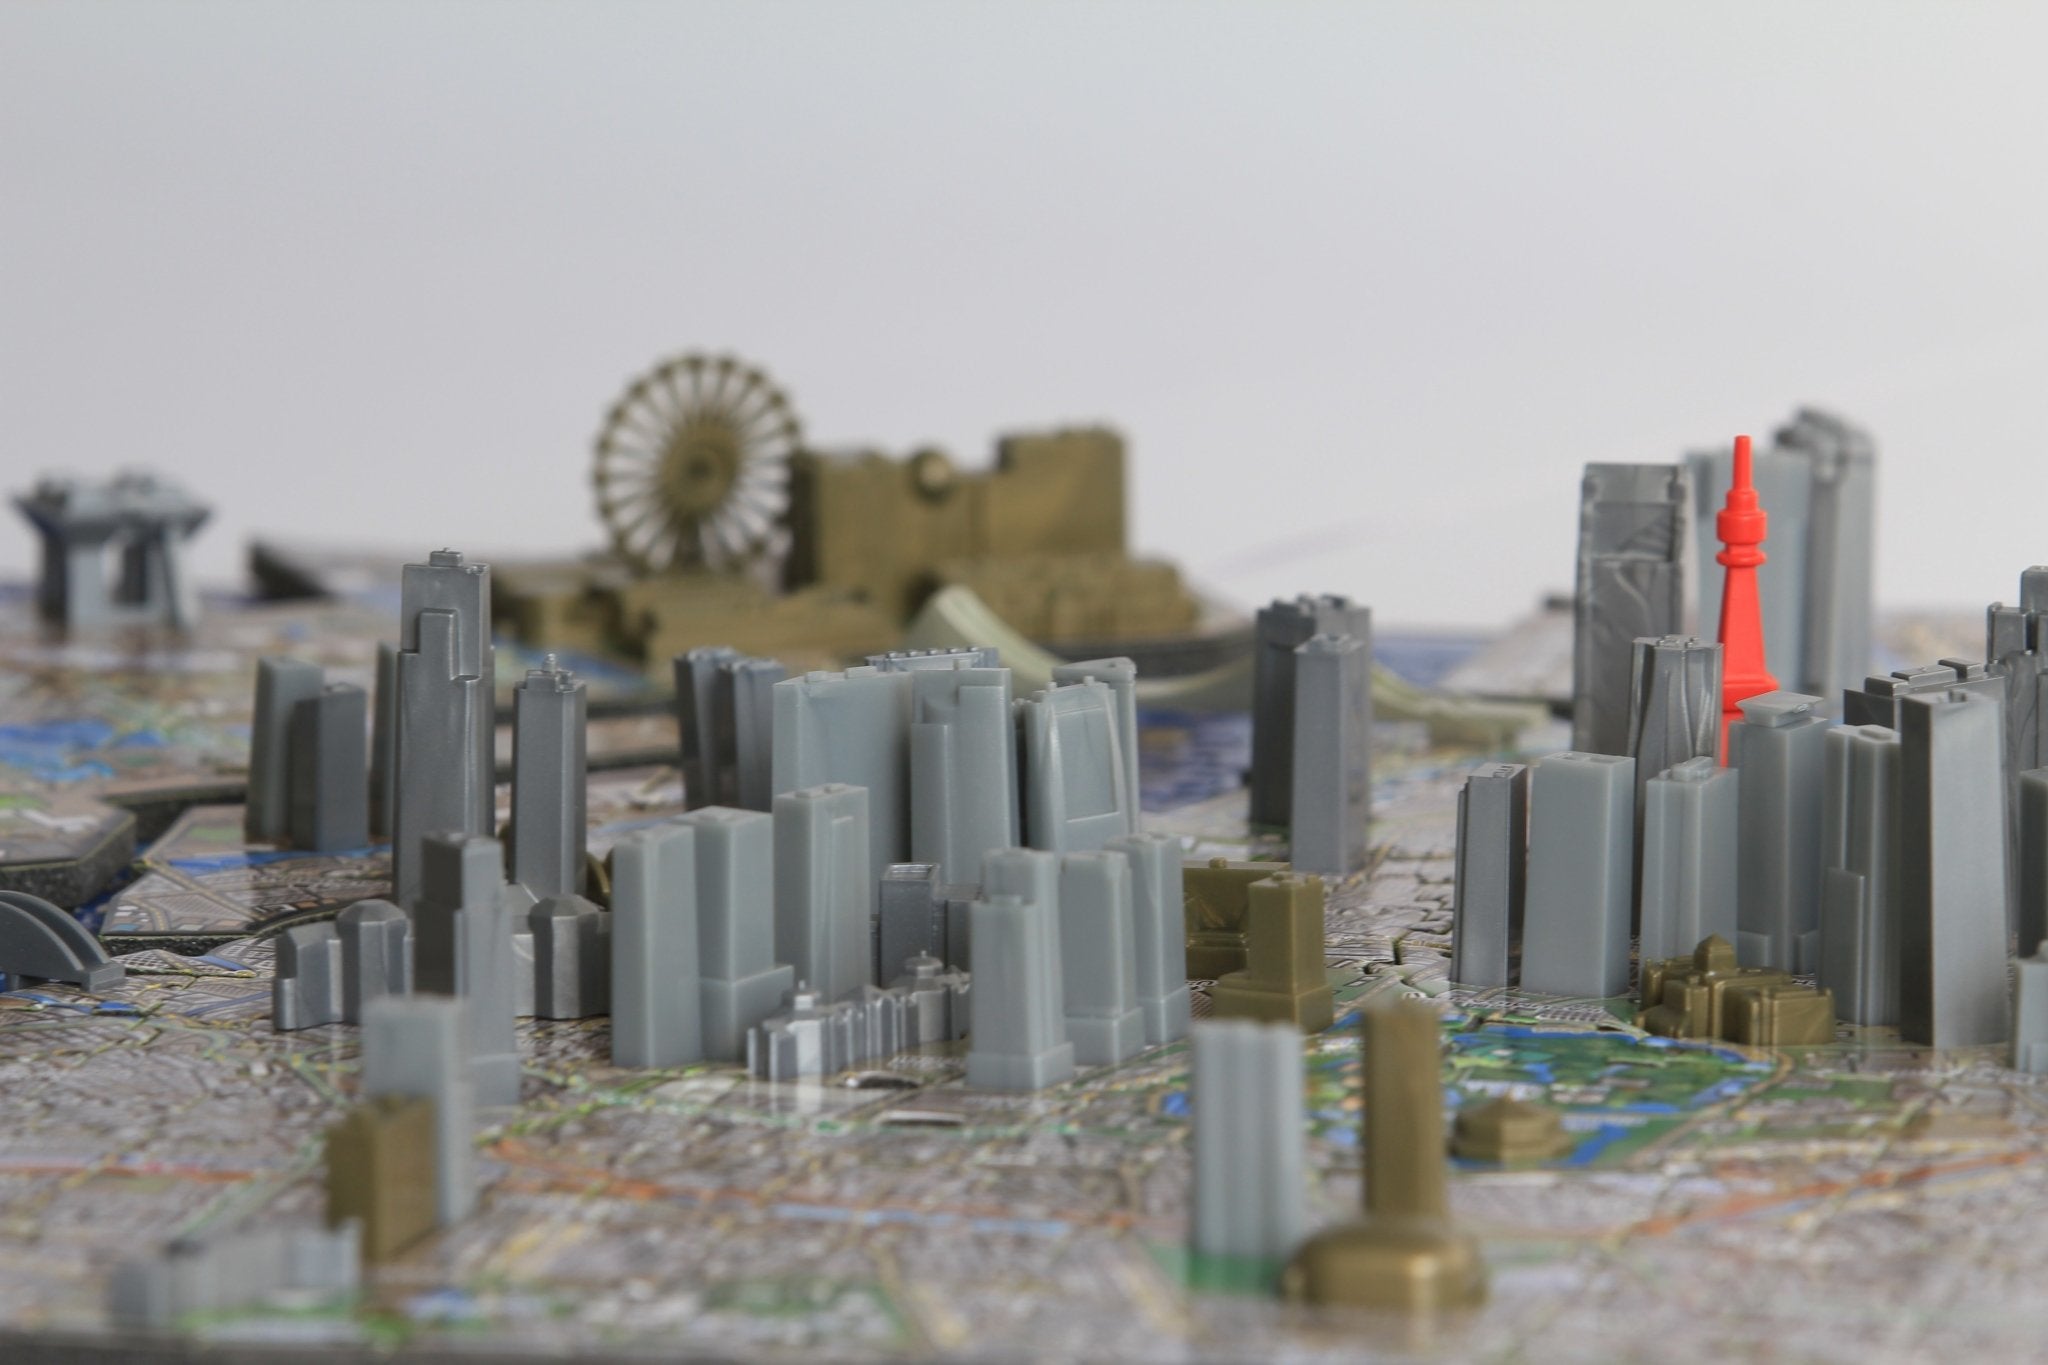 4D Cityscape Tokyo Time Puzzle - 4DPuzz - 4DPuzz
